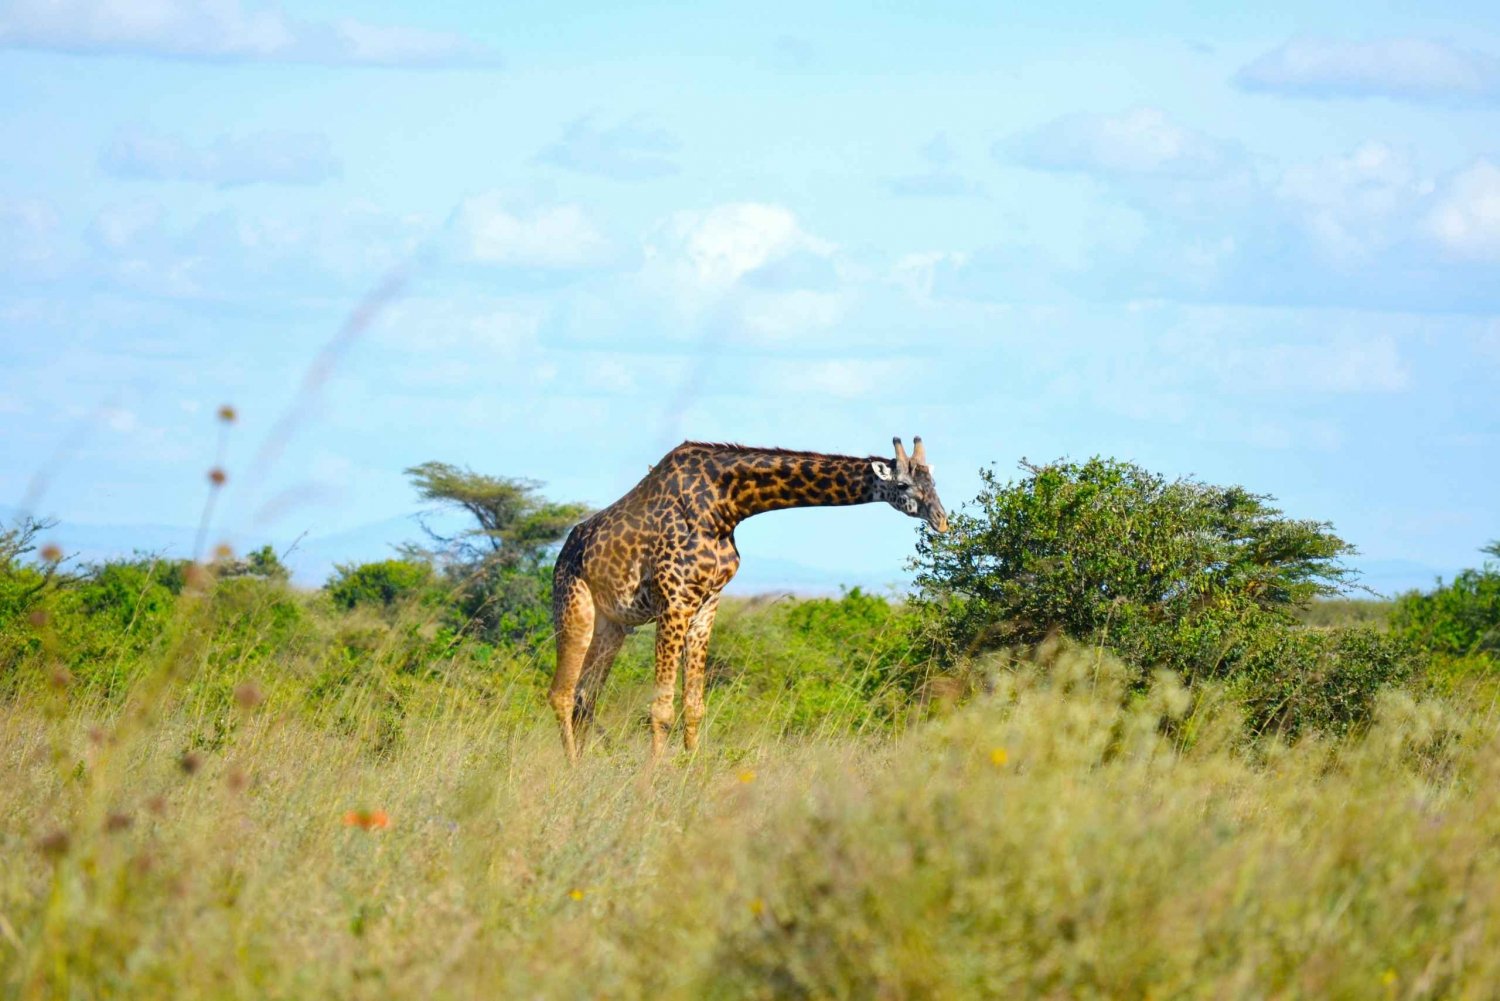 Nairobi: Tour del Parco Nazionale al mattino presto o al pomeriggio